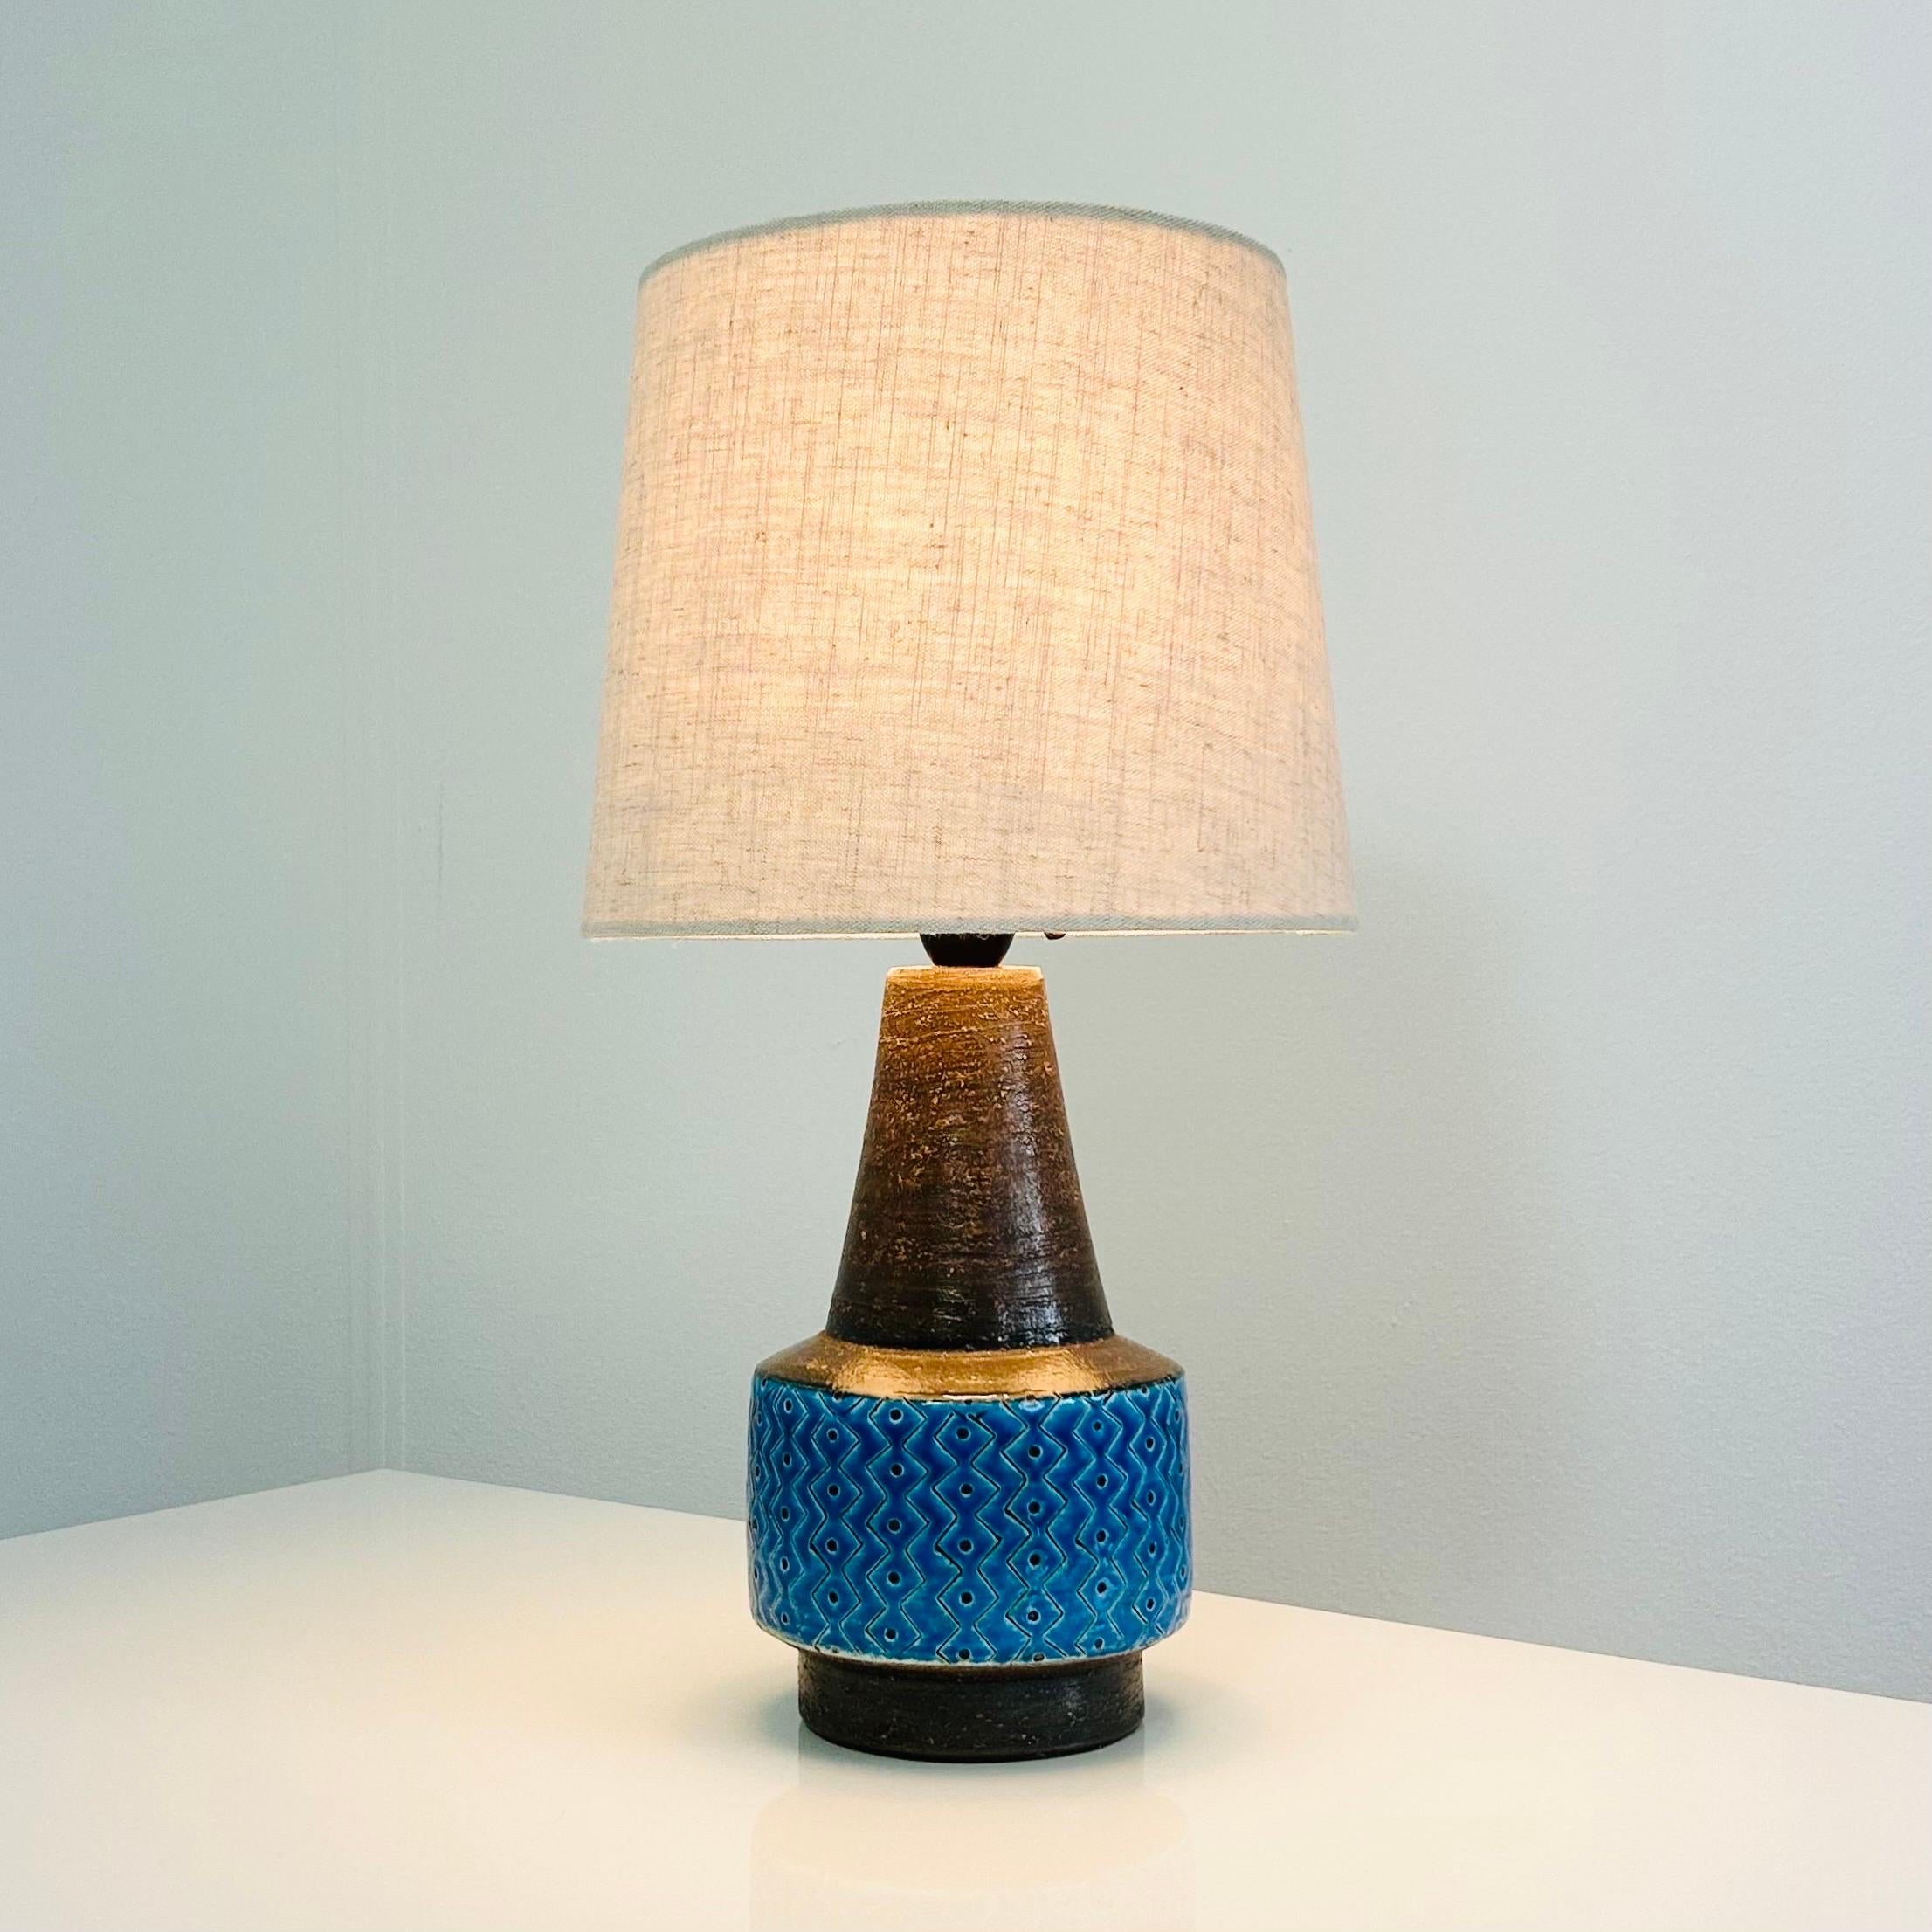 Rare lampe de bureau en grès de Svend Aage Holm Sørensen, fabriquée dans les années 1950. C'est une pièce vraiment parfaite. 

* Lampe de bureau en grès à glaçure bleue et abat-jour en tissu beige.
* Designer : Svend Aage Holm Sørensen
* Producteur